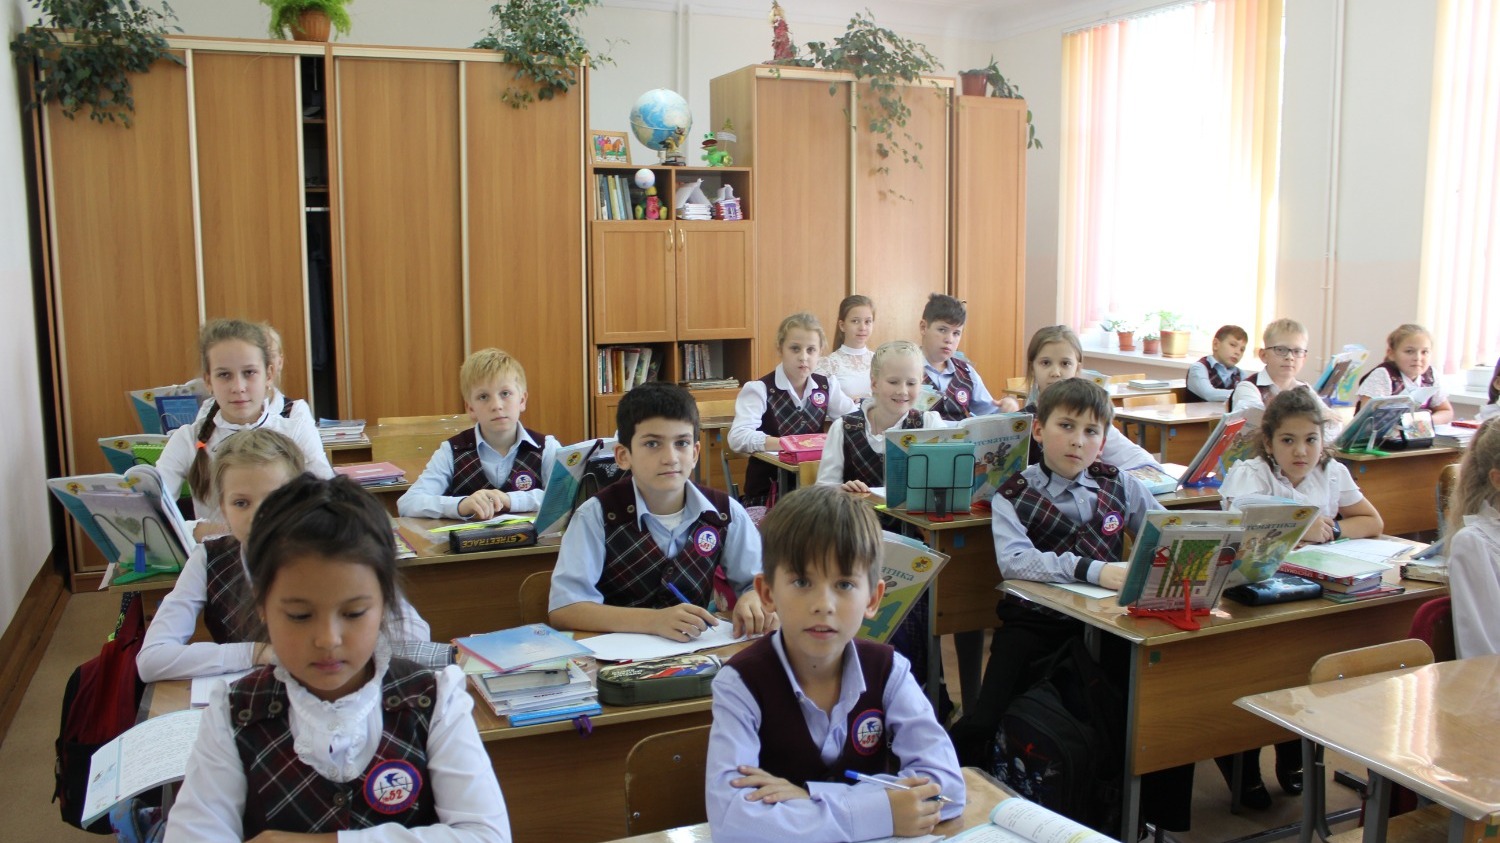 Например, в Ростовской области семьи с тремя и более детьми получают ежемесячную финансовую помощь в размере 498 рублей на каждого ребенка.